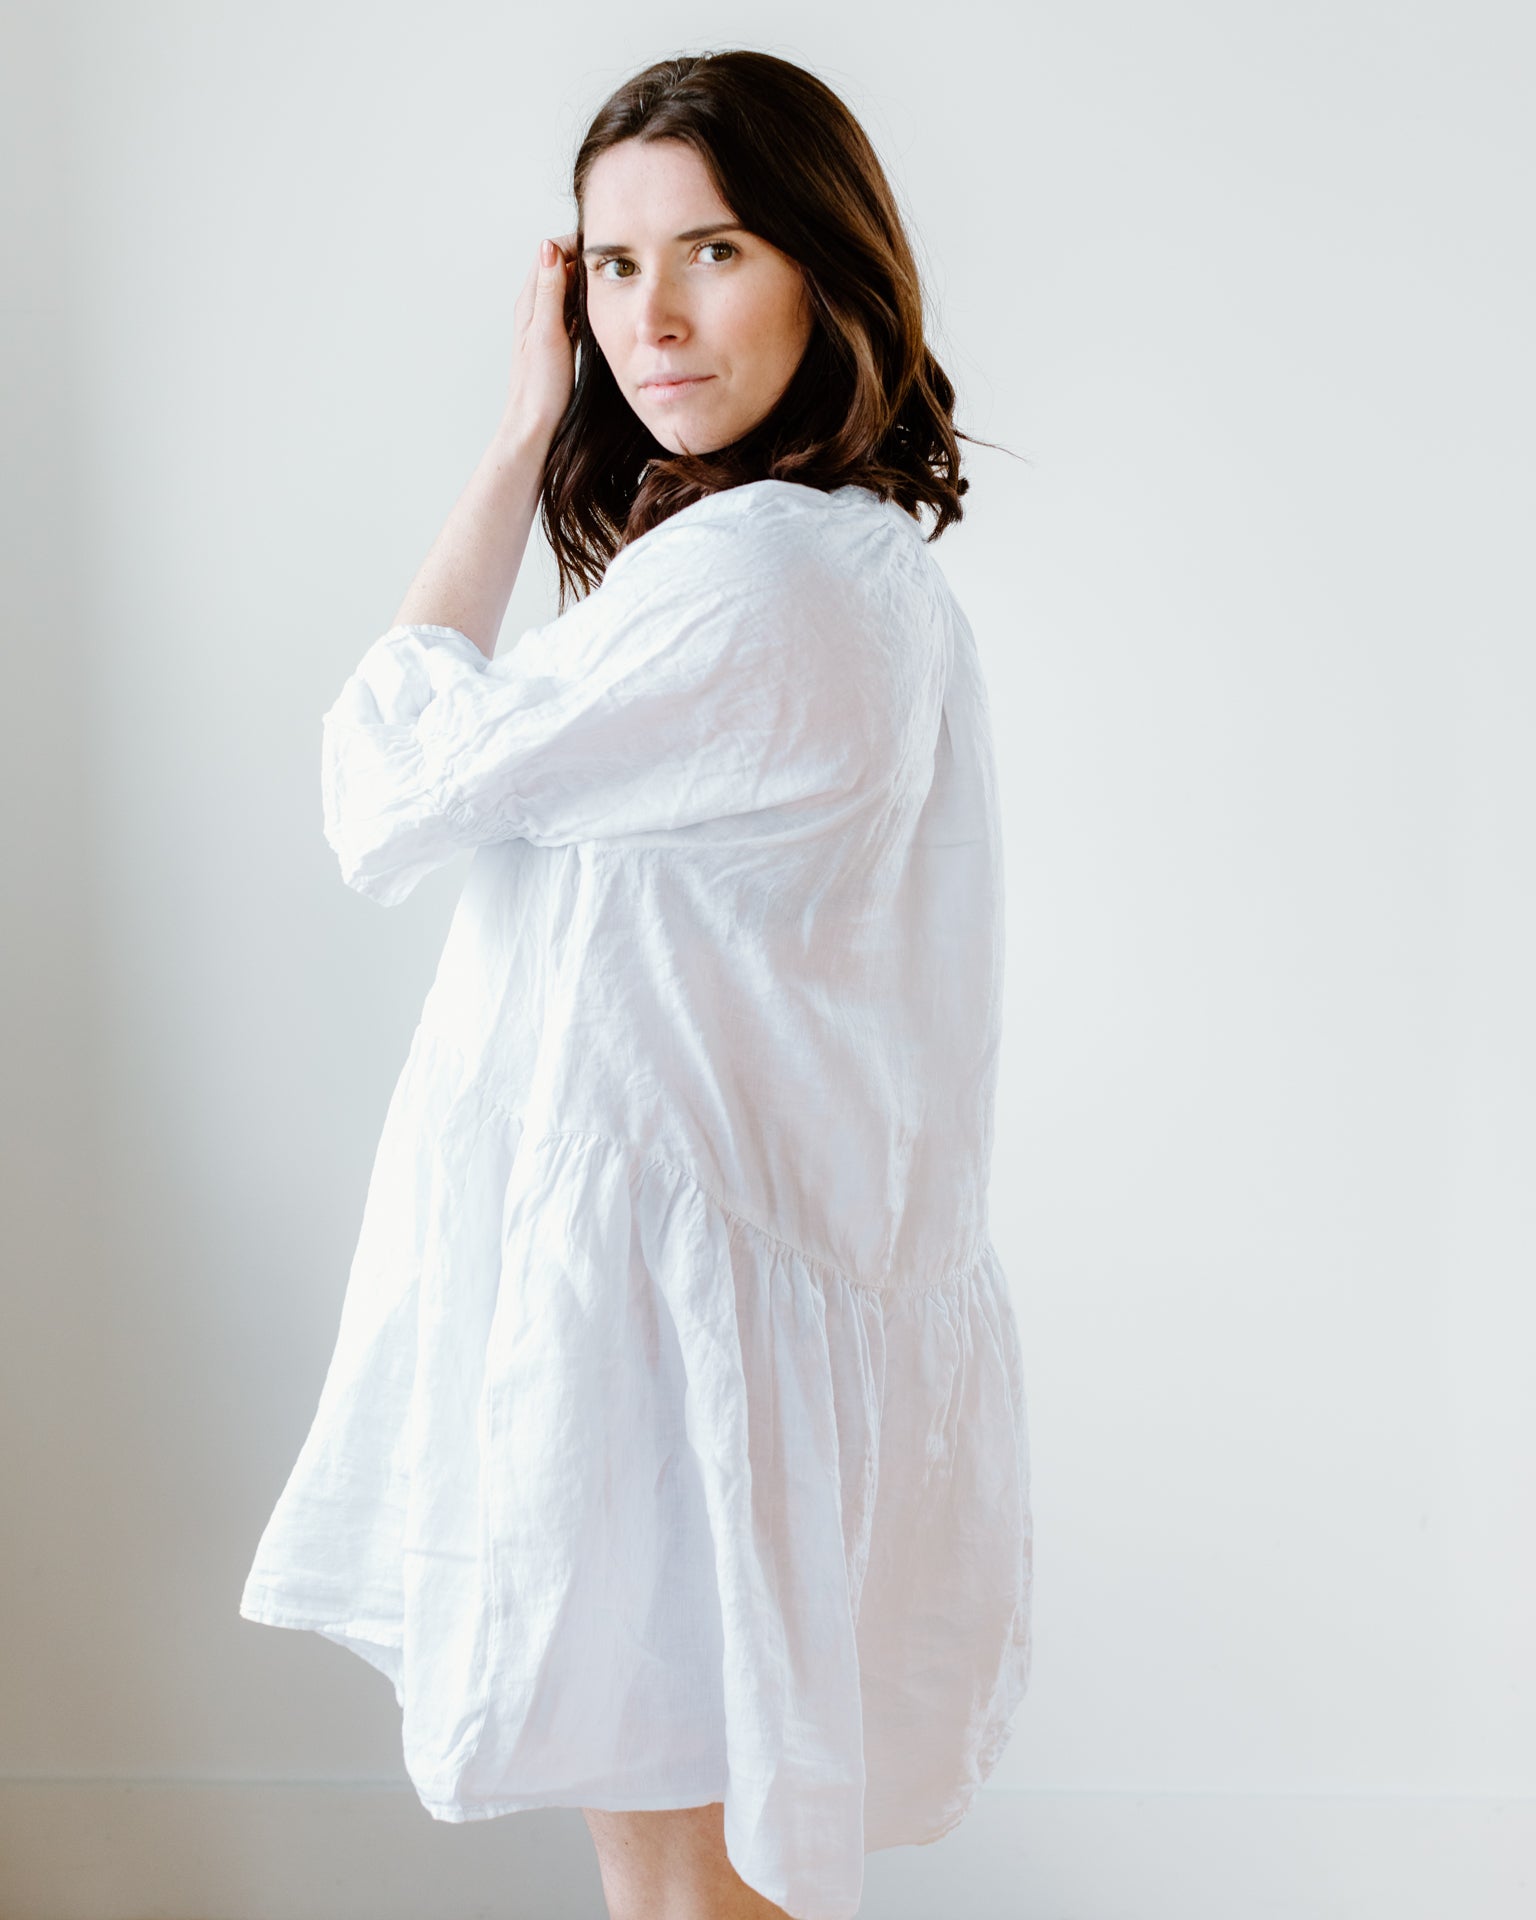 https://www.blissboutiques.com/cdn/shop/products/bliss-bouqitues-velvet-by-graham-spencer-bria-dress-in-white-32064310476897.jpg?v=1682227861